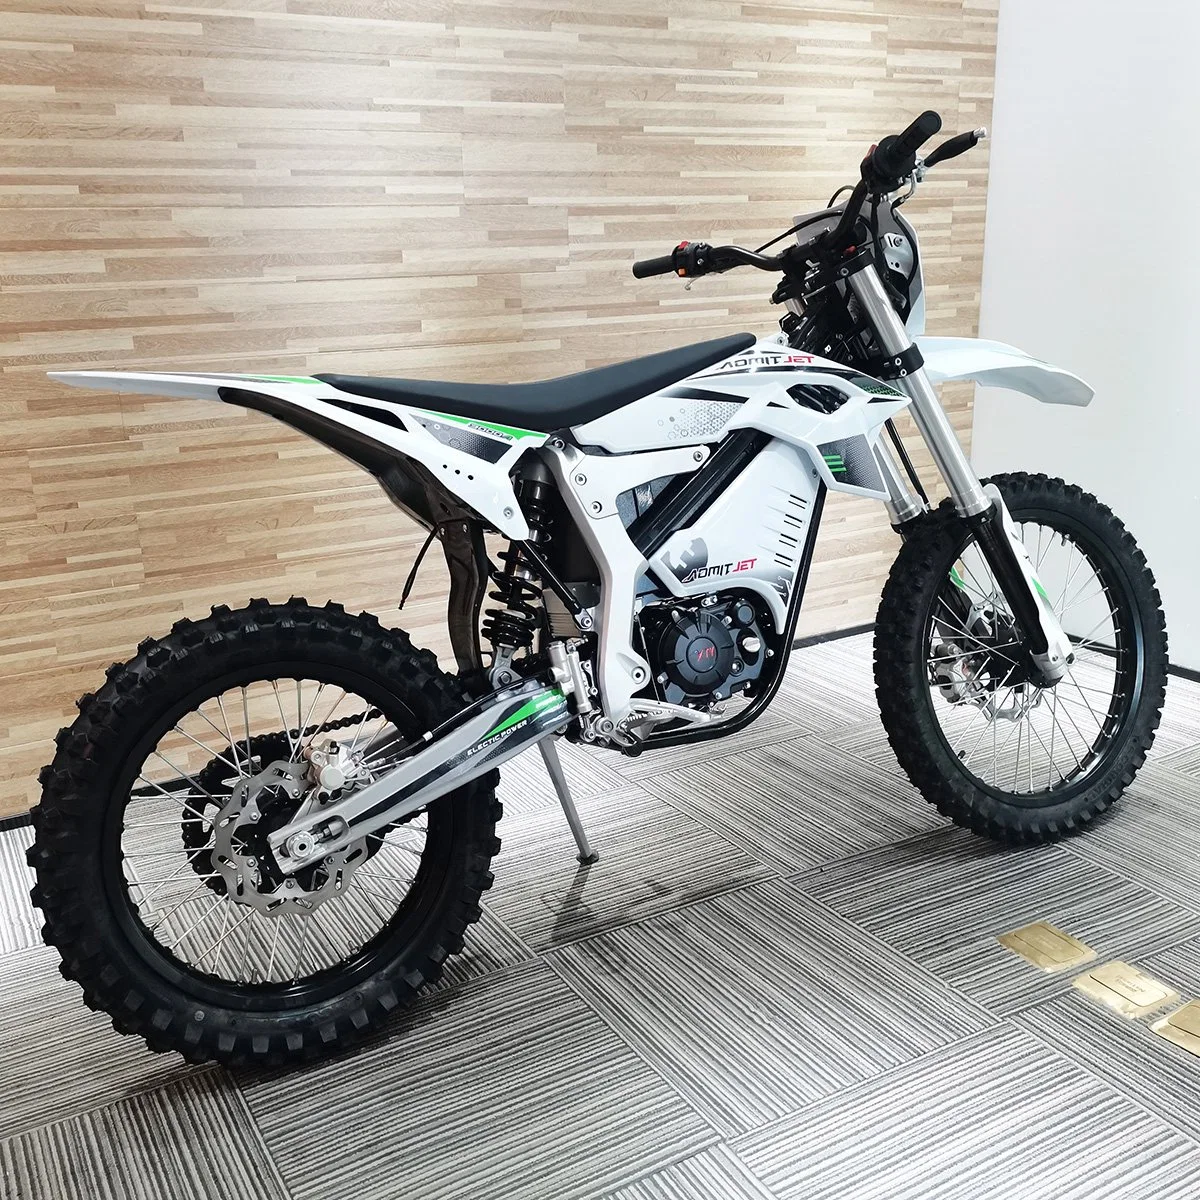 2022 Вт мотор Ebike 12000взрослых Offroad Мото кросс мотоцикл электрический след на велосипеде